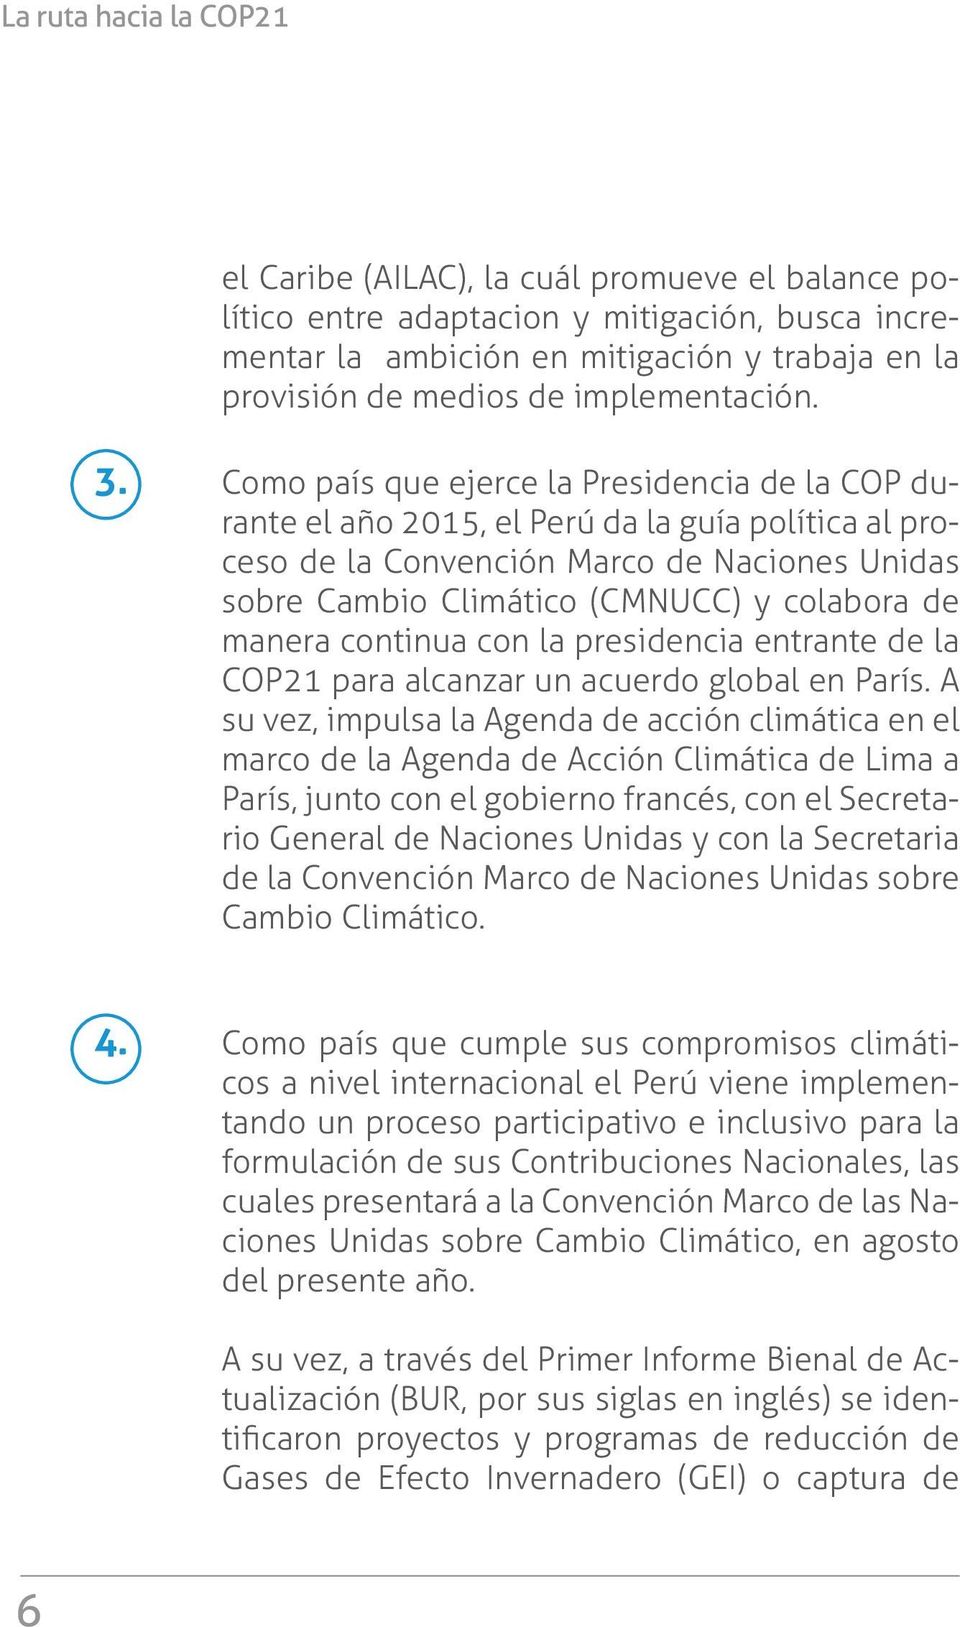 Como país que ejerce la Presidencia de la COP durante el año 2015, el Perú da la guía política al proceso de la Convención Marco de Naciones Unidas sobre Cambio Climático (CMNUCC) y colabora de